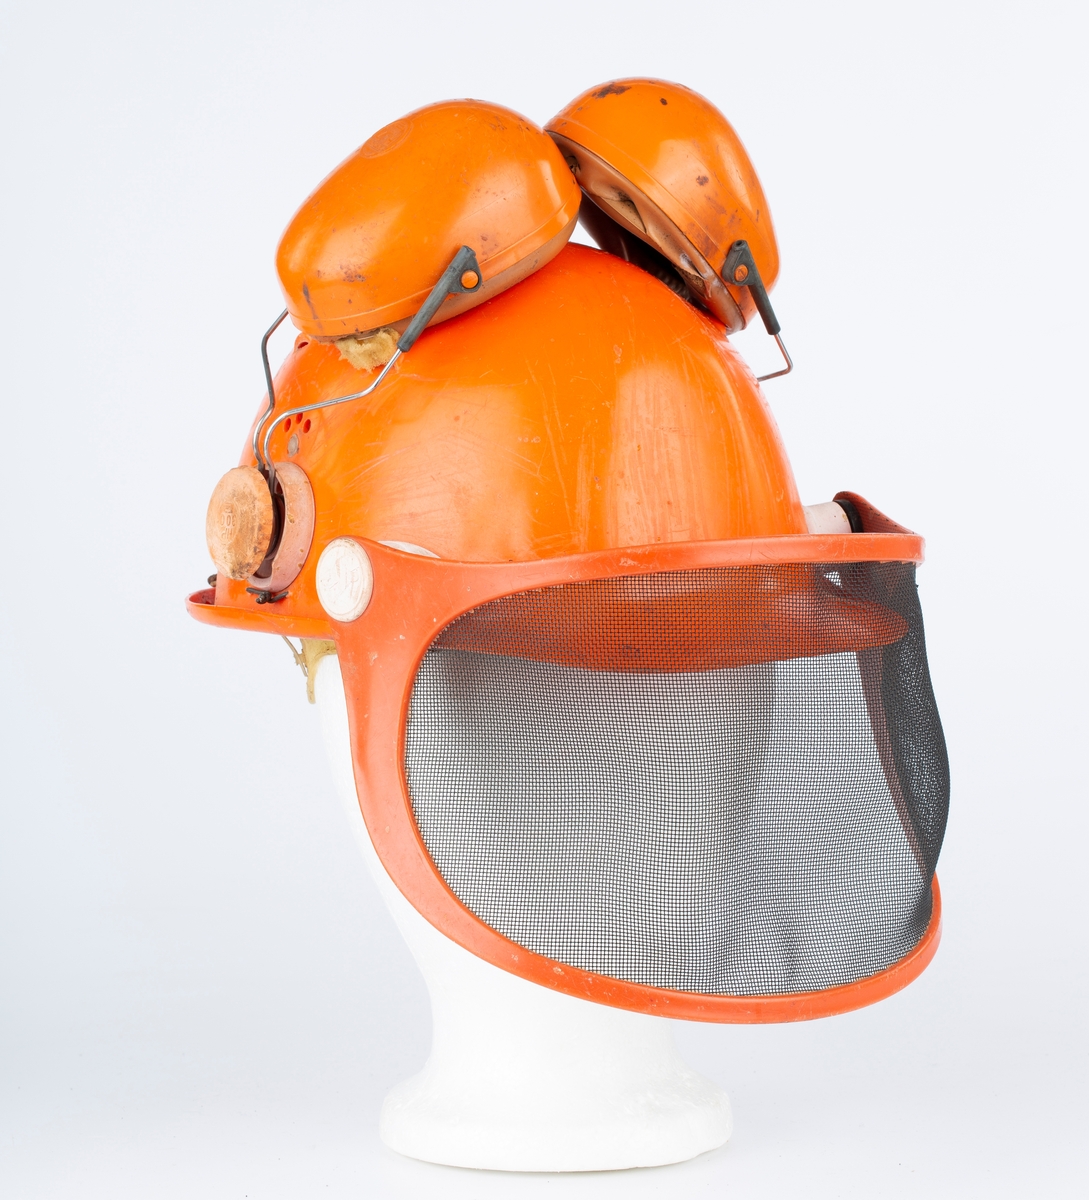 Hjelm med øreklokker og netting visir. Orange.
Brukt til skogsarbeid.